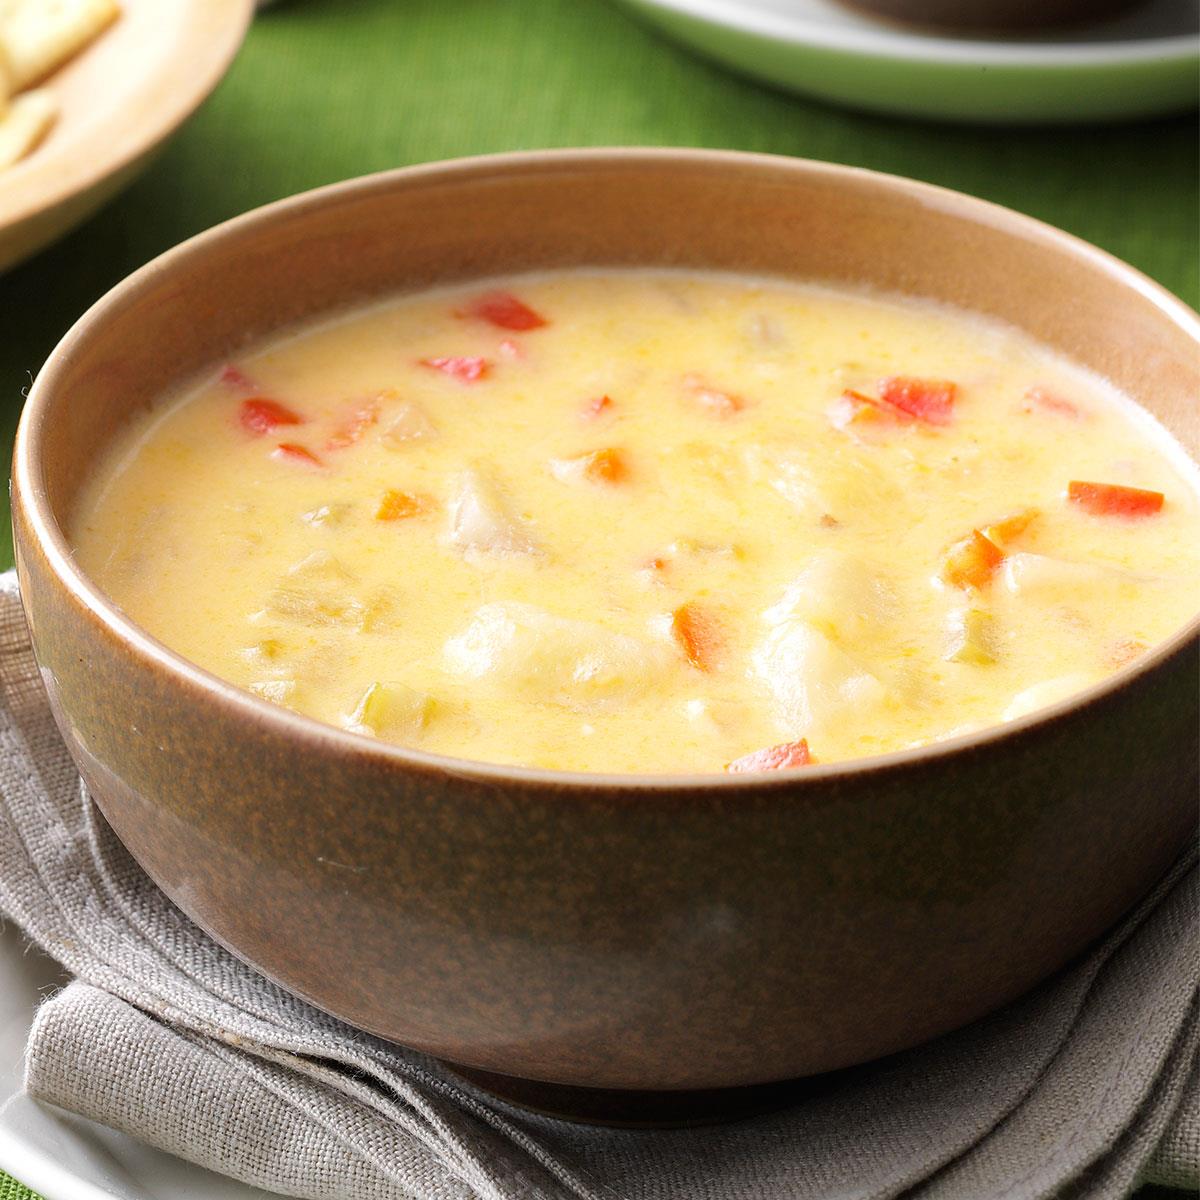 Рецепт сырного супа без плавленного сыра. Сырный суп из плавленных сырков. Суп с плавленным сыром. Суп сырный из плавленного сыра. Сырок плавленный для супа.